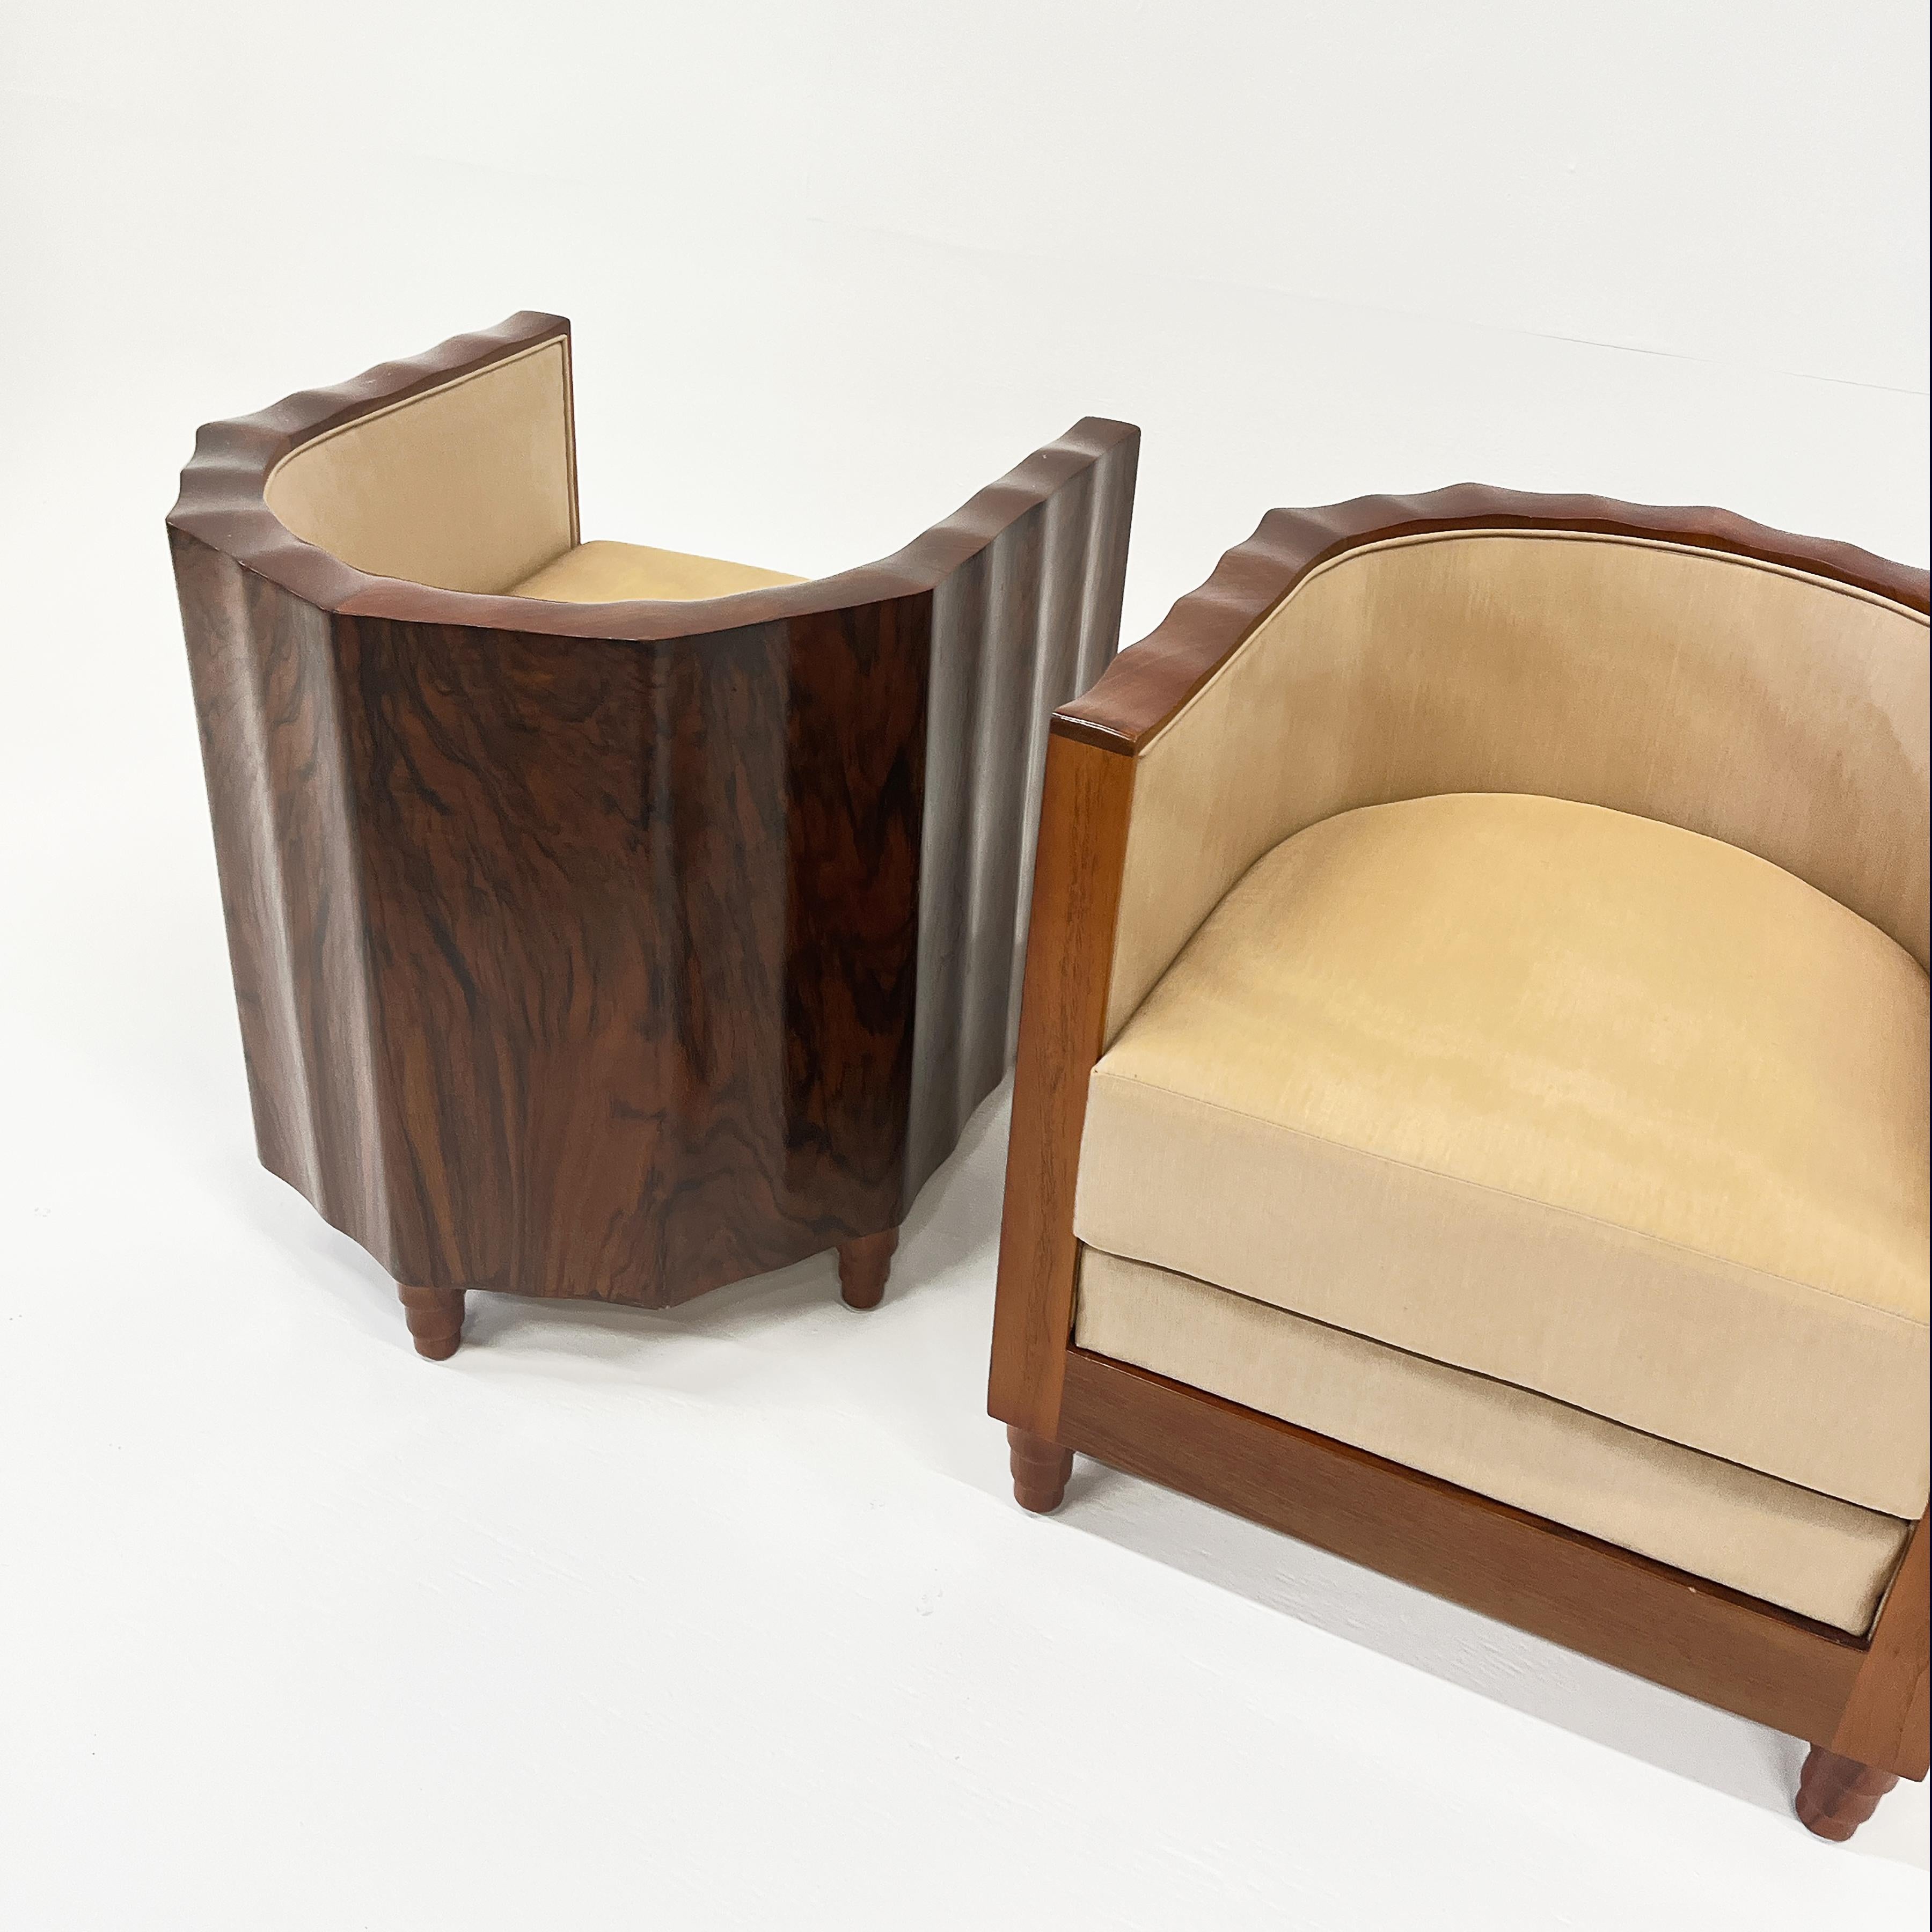 Silk Art Deco Club Chairs, Austria 1930s For Sale